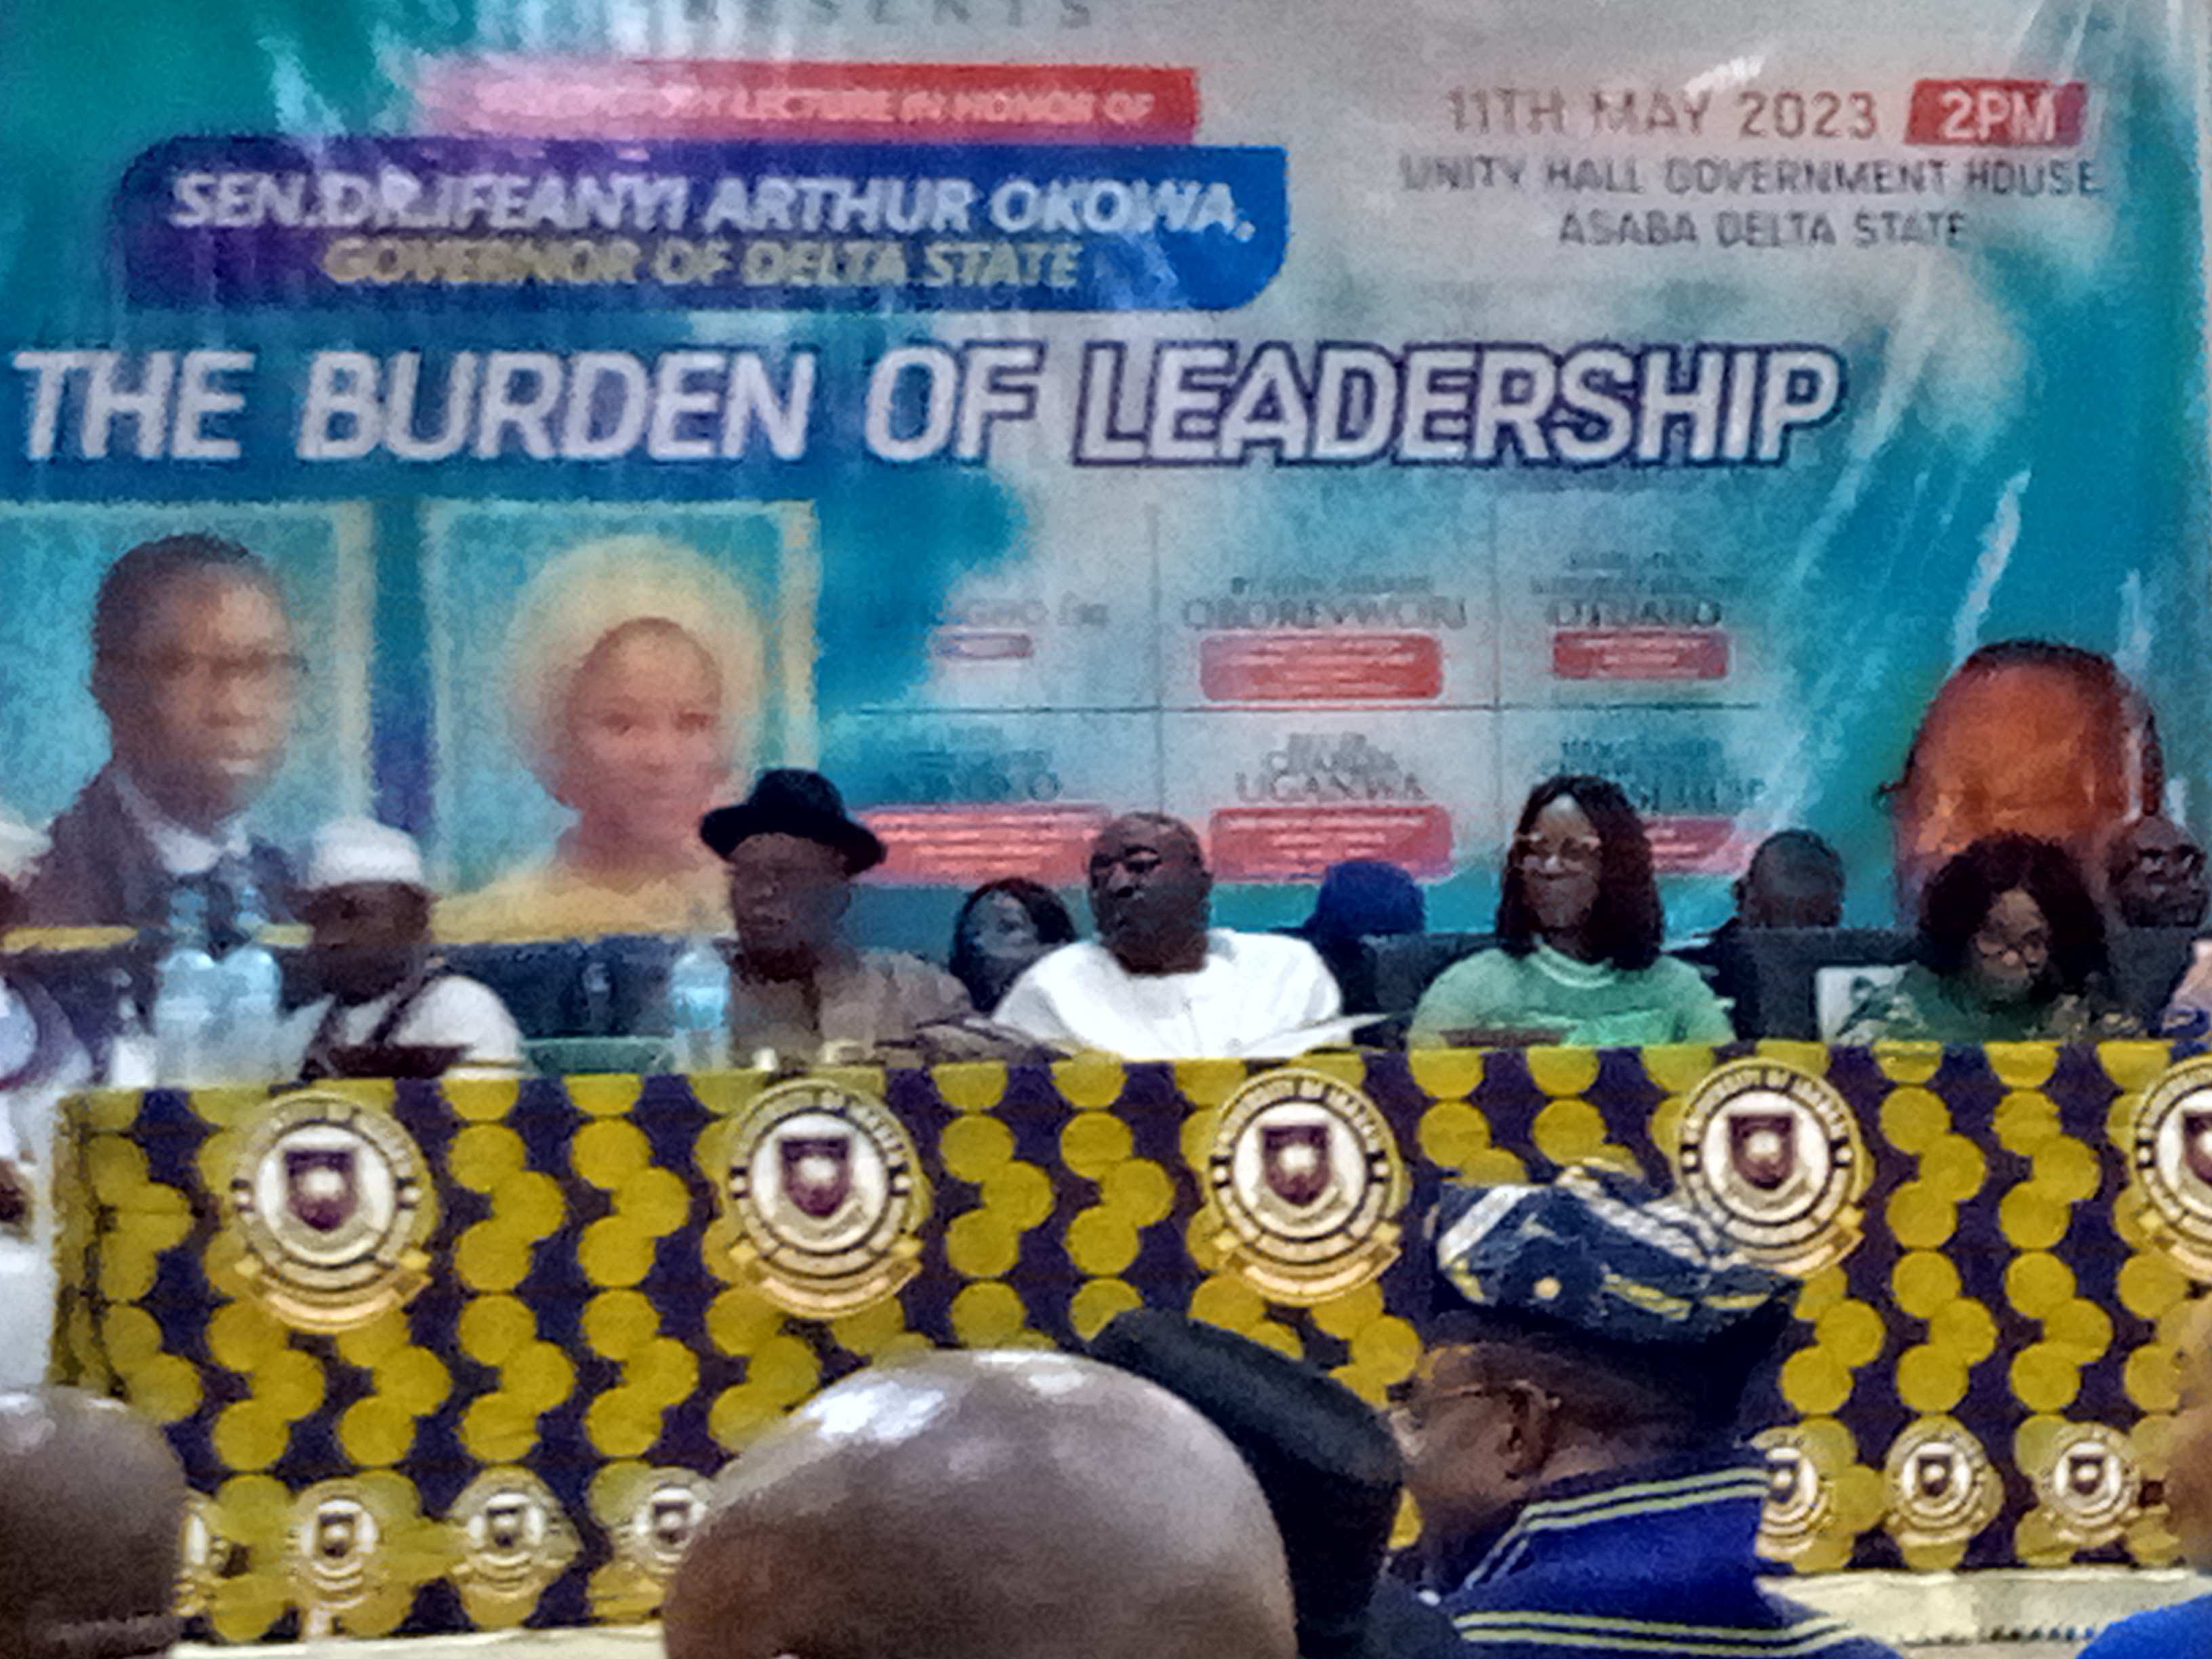 A good leader should translate vision into reality, says Okowa